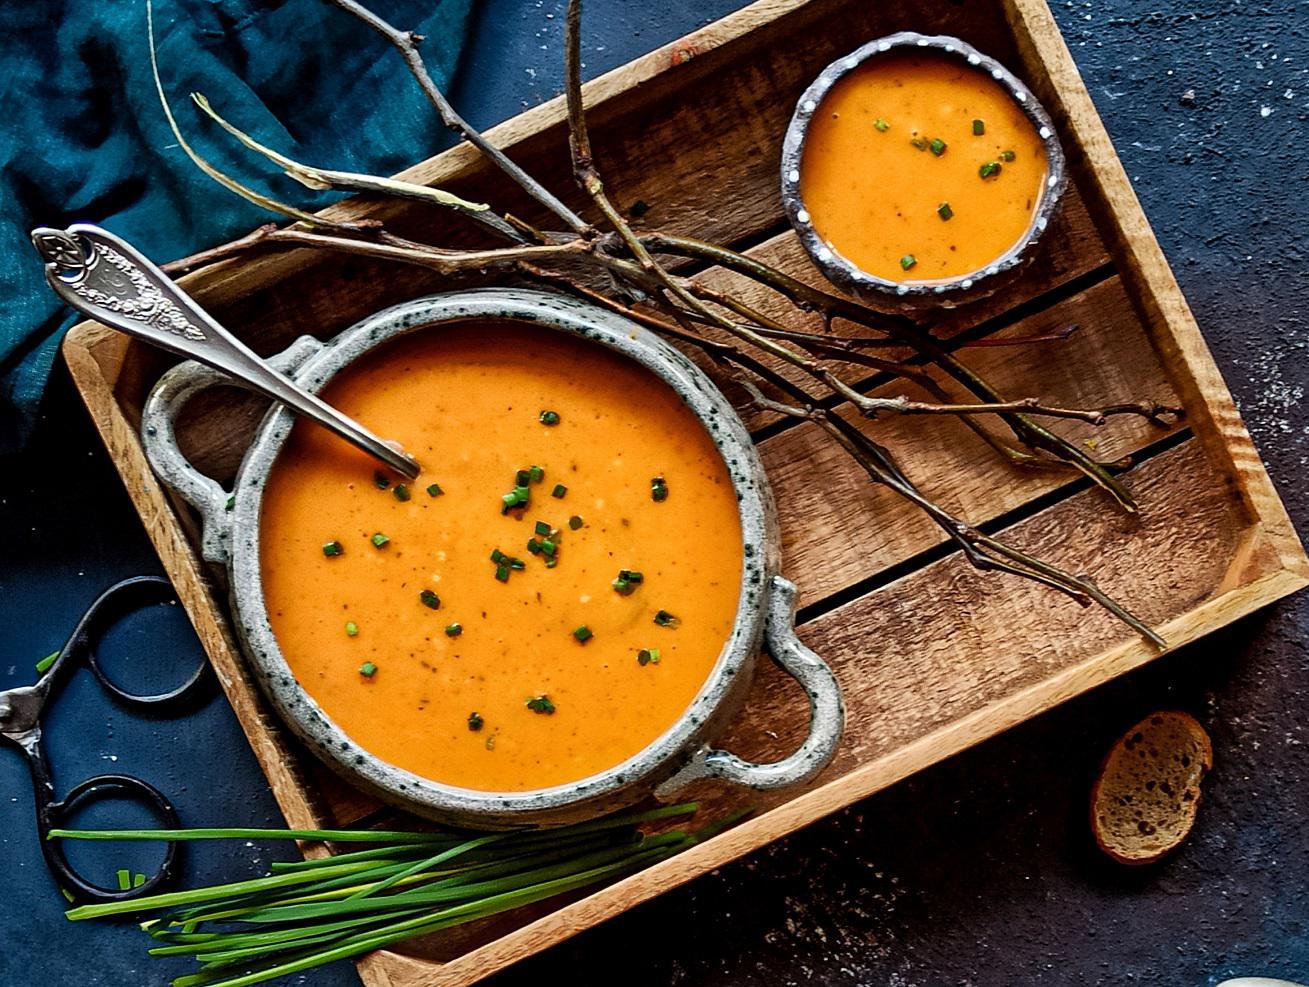 أسرار صنع الحساء اللذيذ وحلول المشاكل الشائعة عند صنع الحساء